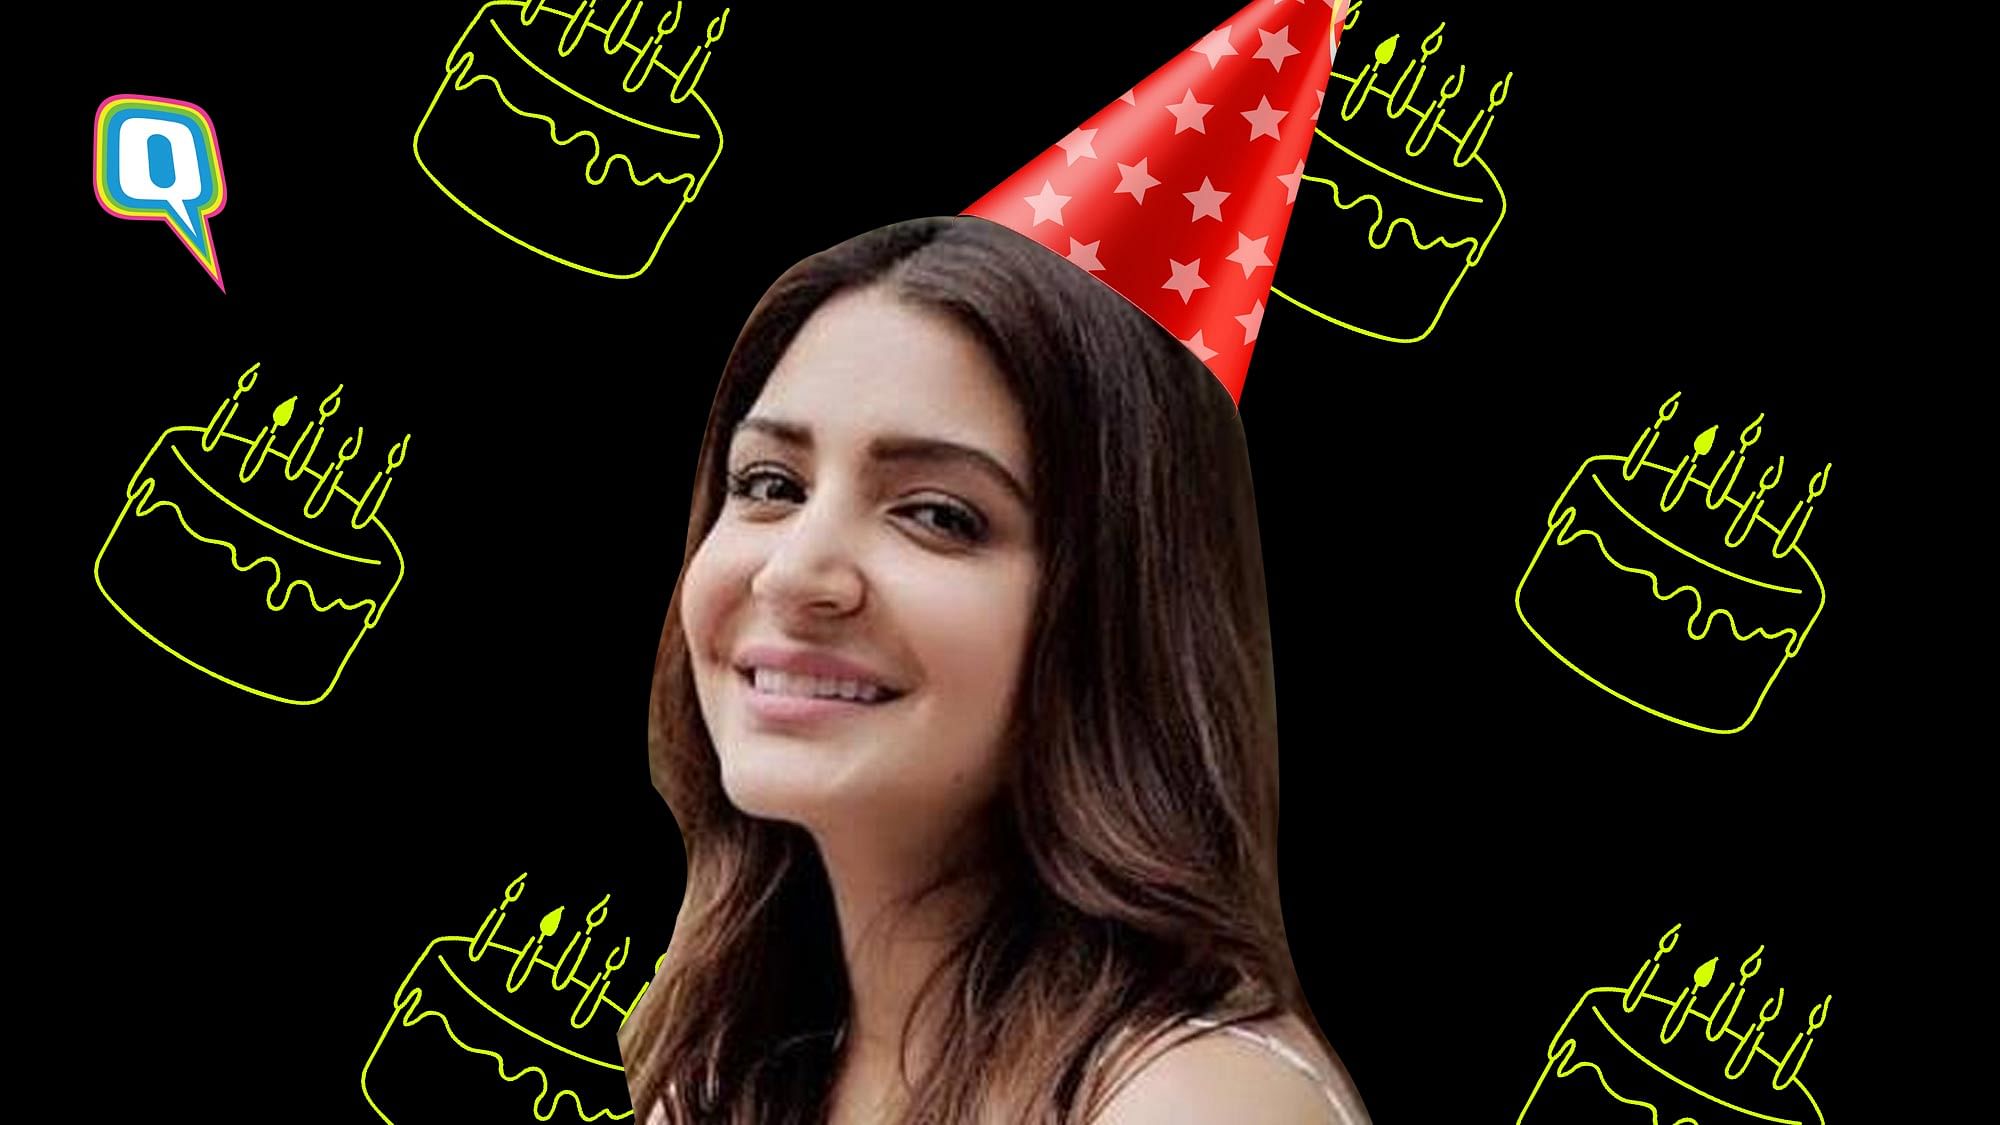 Wishing Anushka Sharma a meme-ful birthday